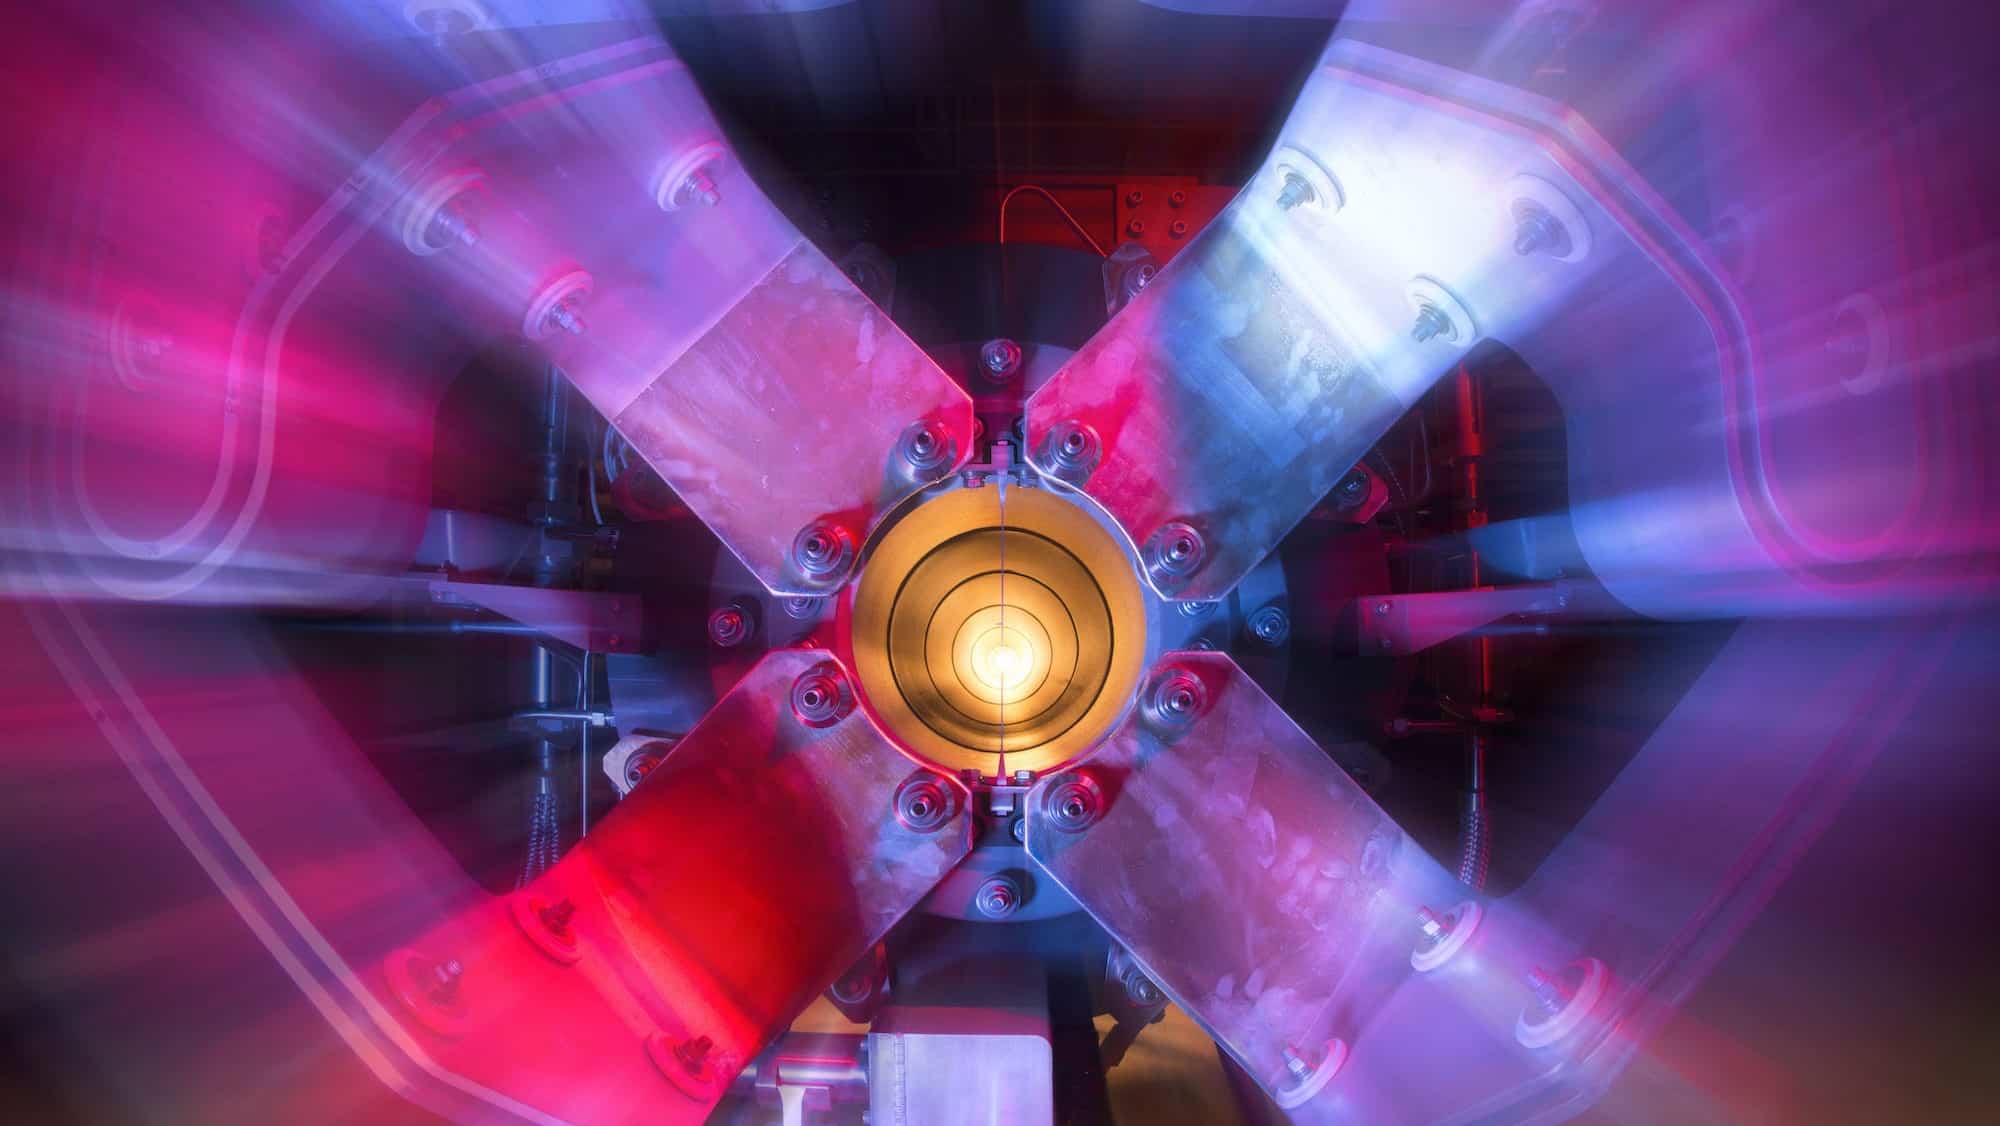 Neutrino probe